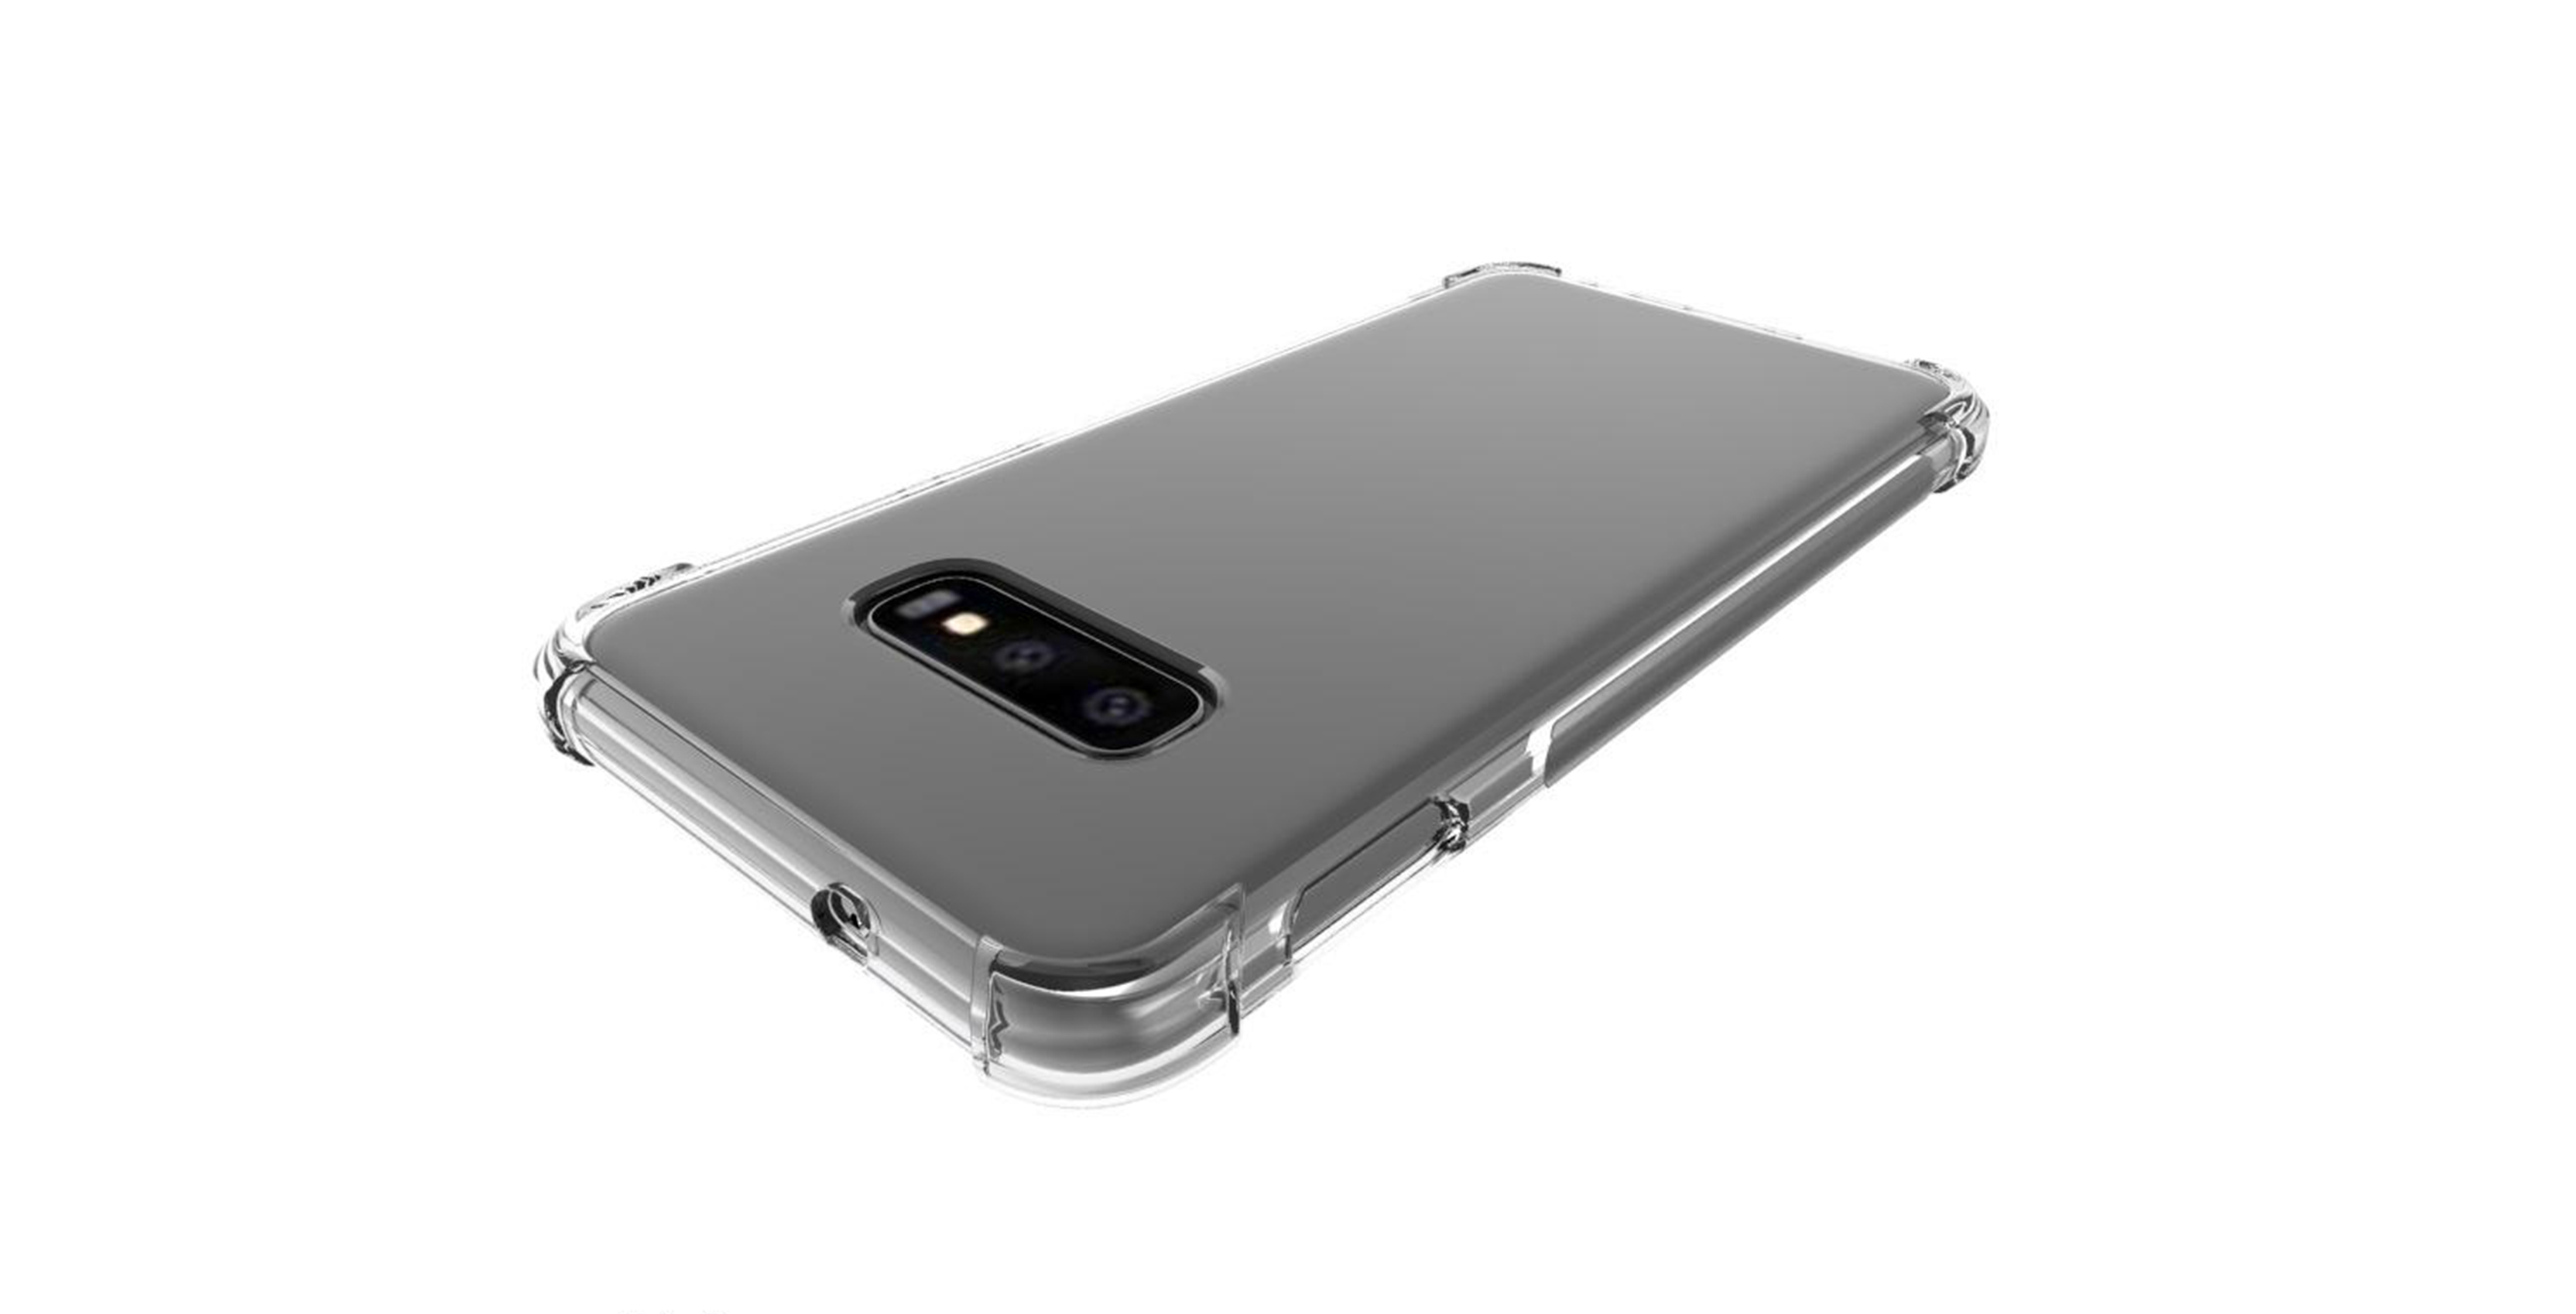 Samsung Galaxy S10 Lite case render